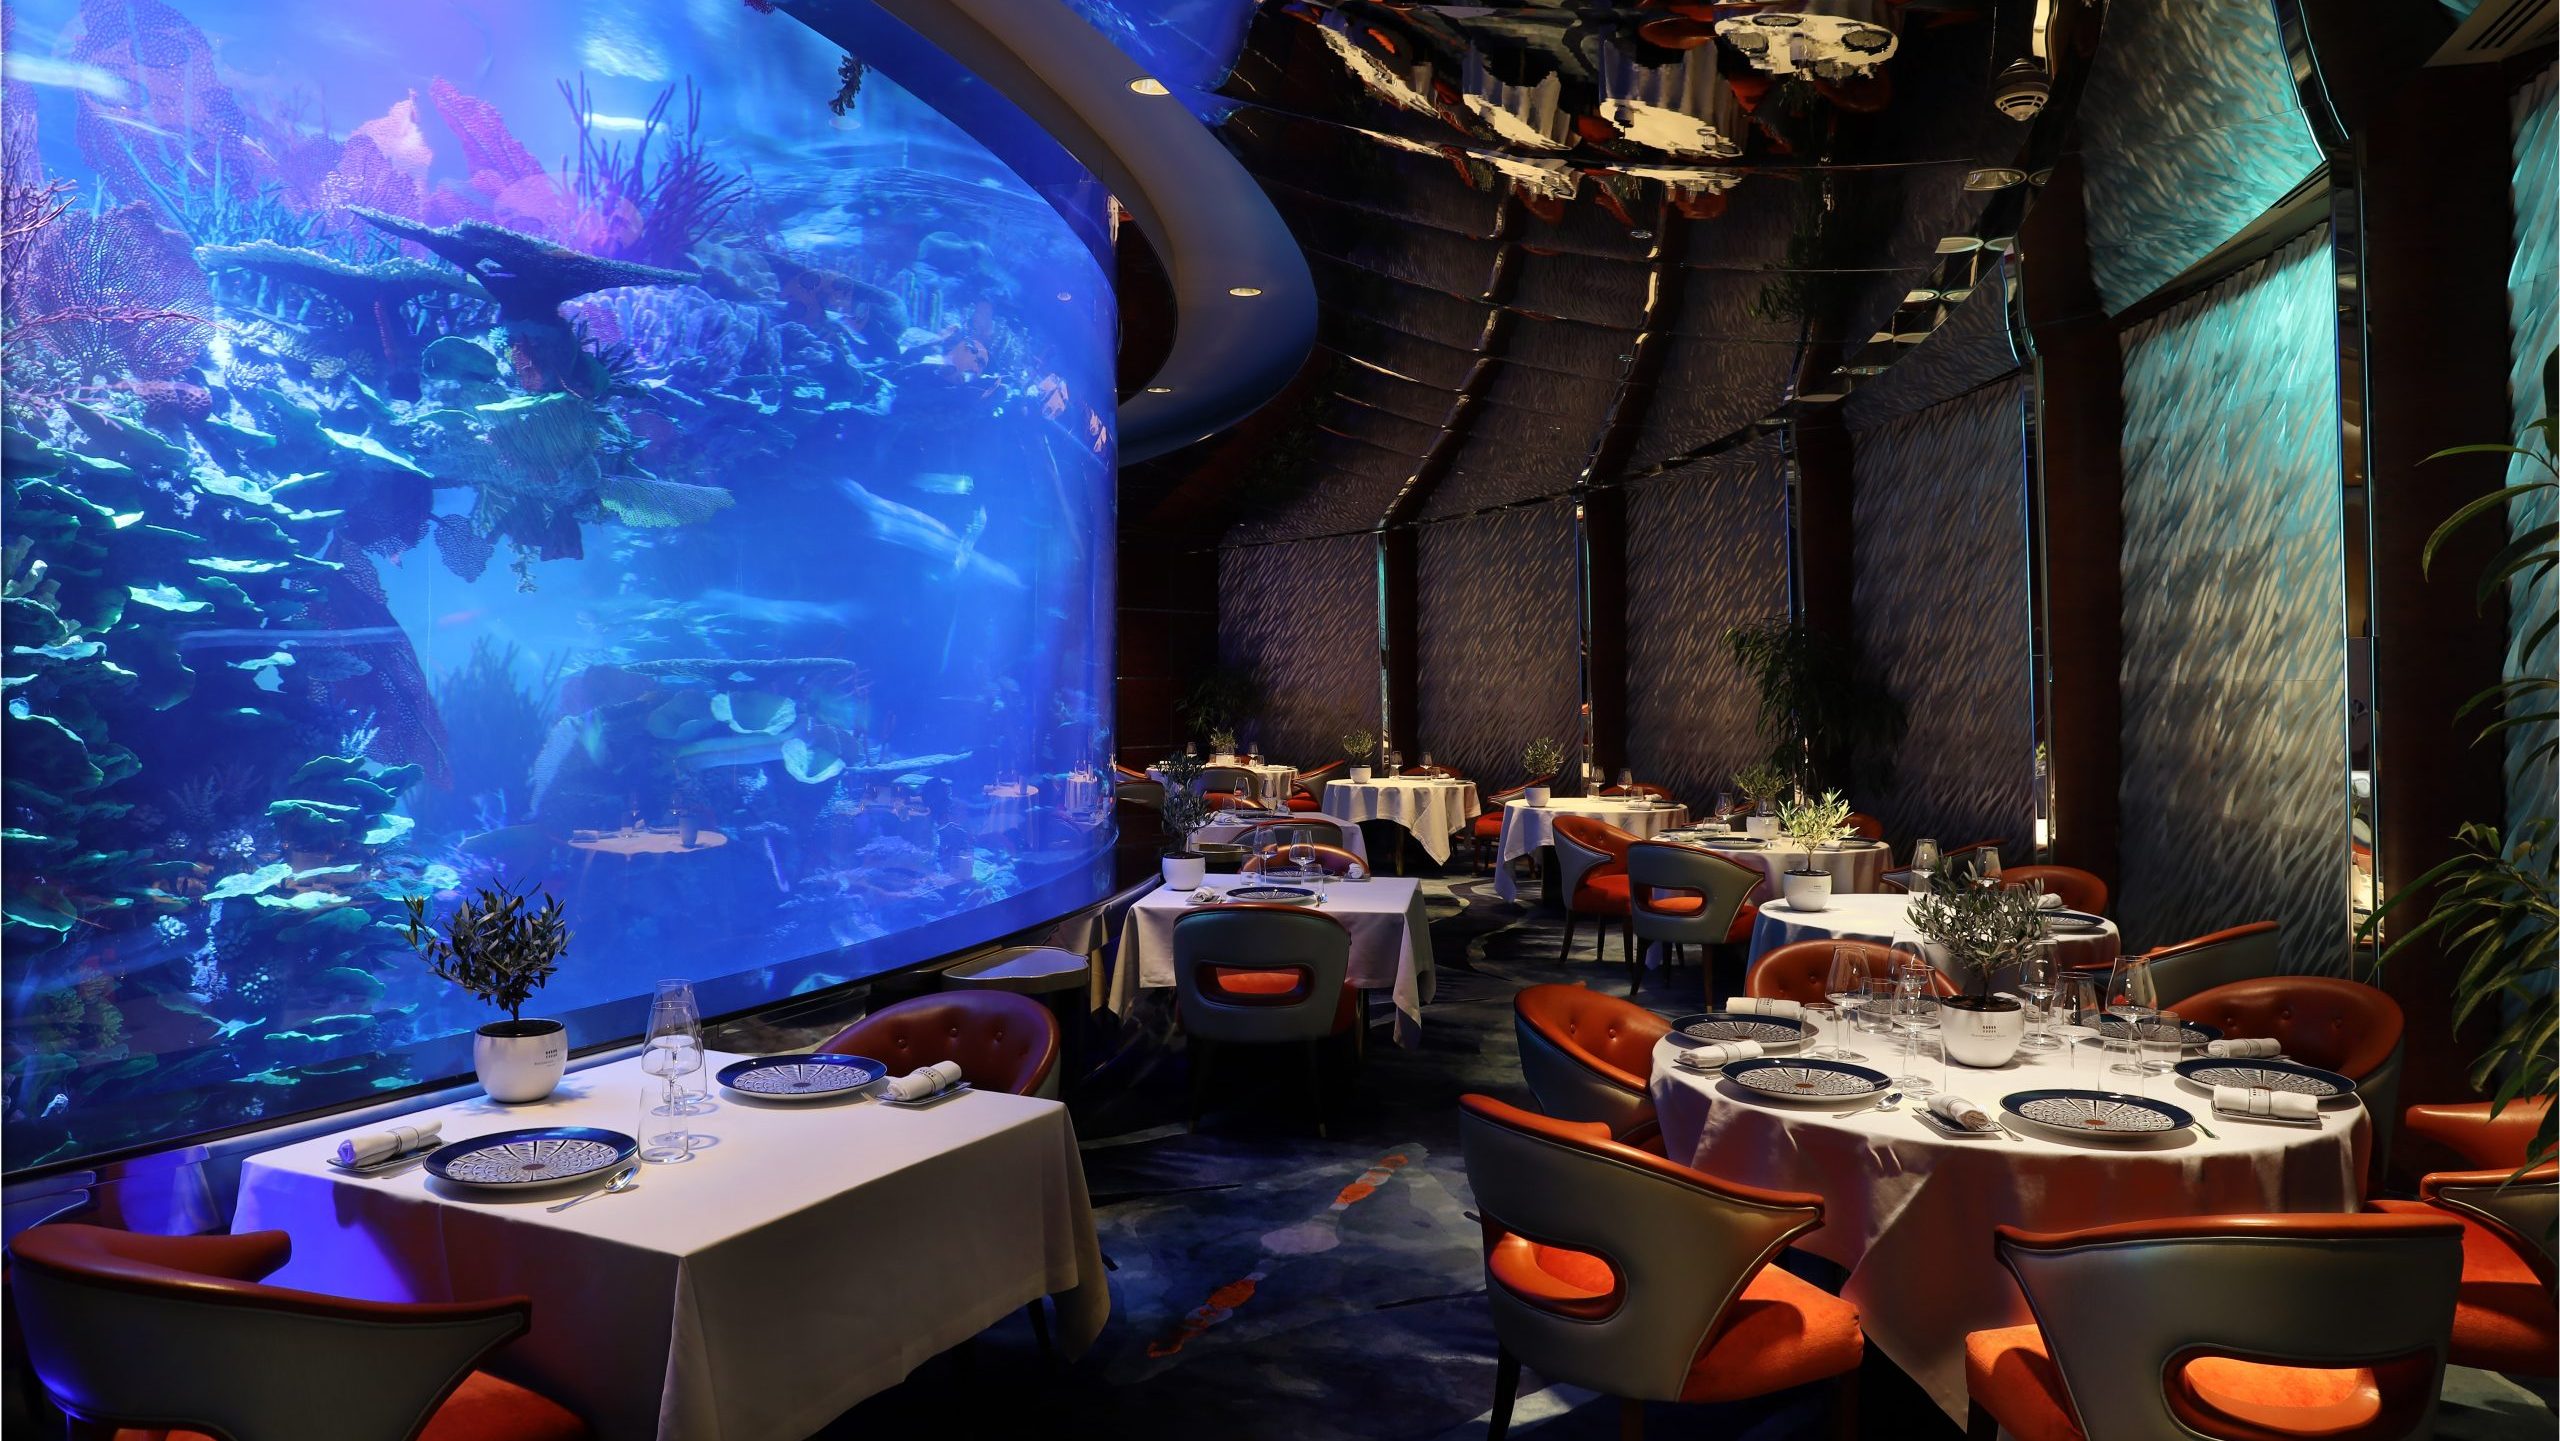 Al Mahara: ресторан, специализирующийся на рыбной кухне, который находится в отеле Burj Al Arab.